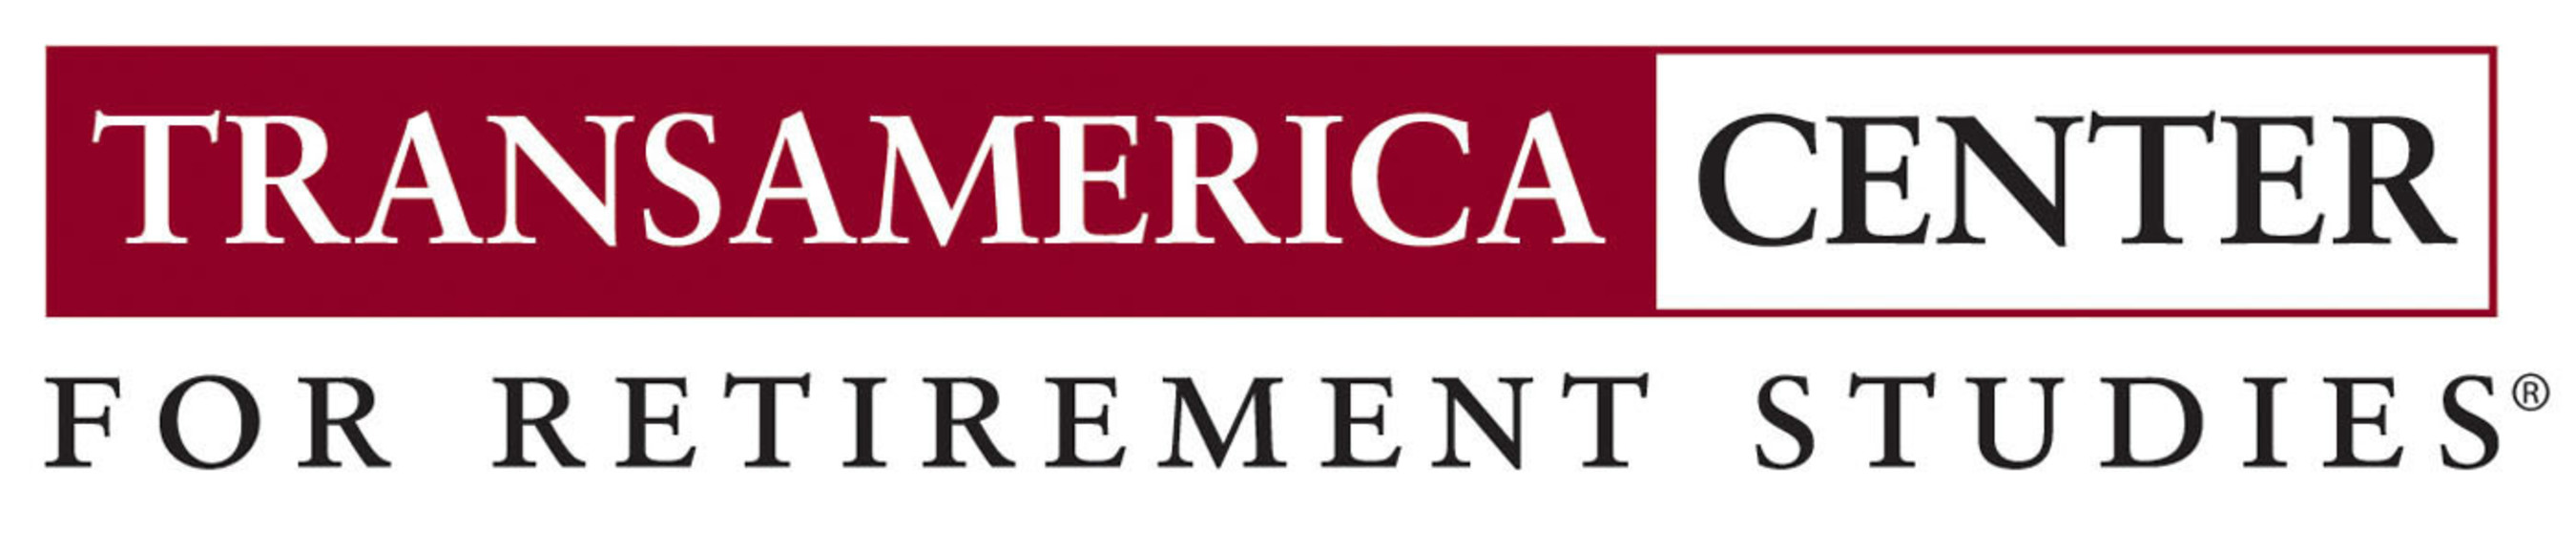 Transamerica Center for Retirement Studies logo. (PRNewsFoto/Transamerica Center for Retirement Studies)